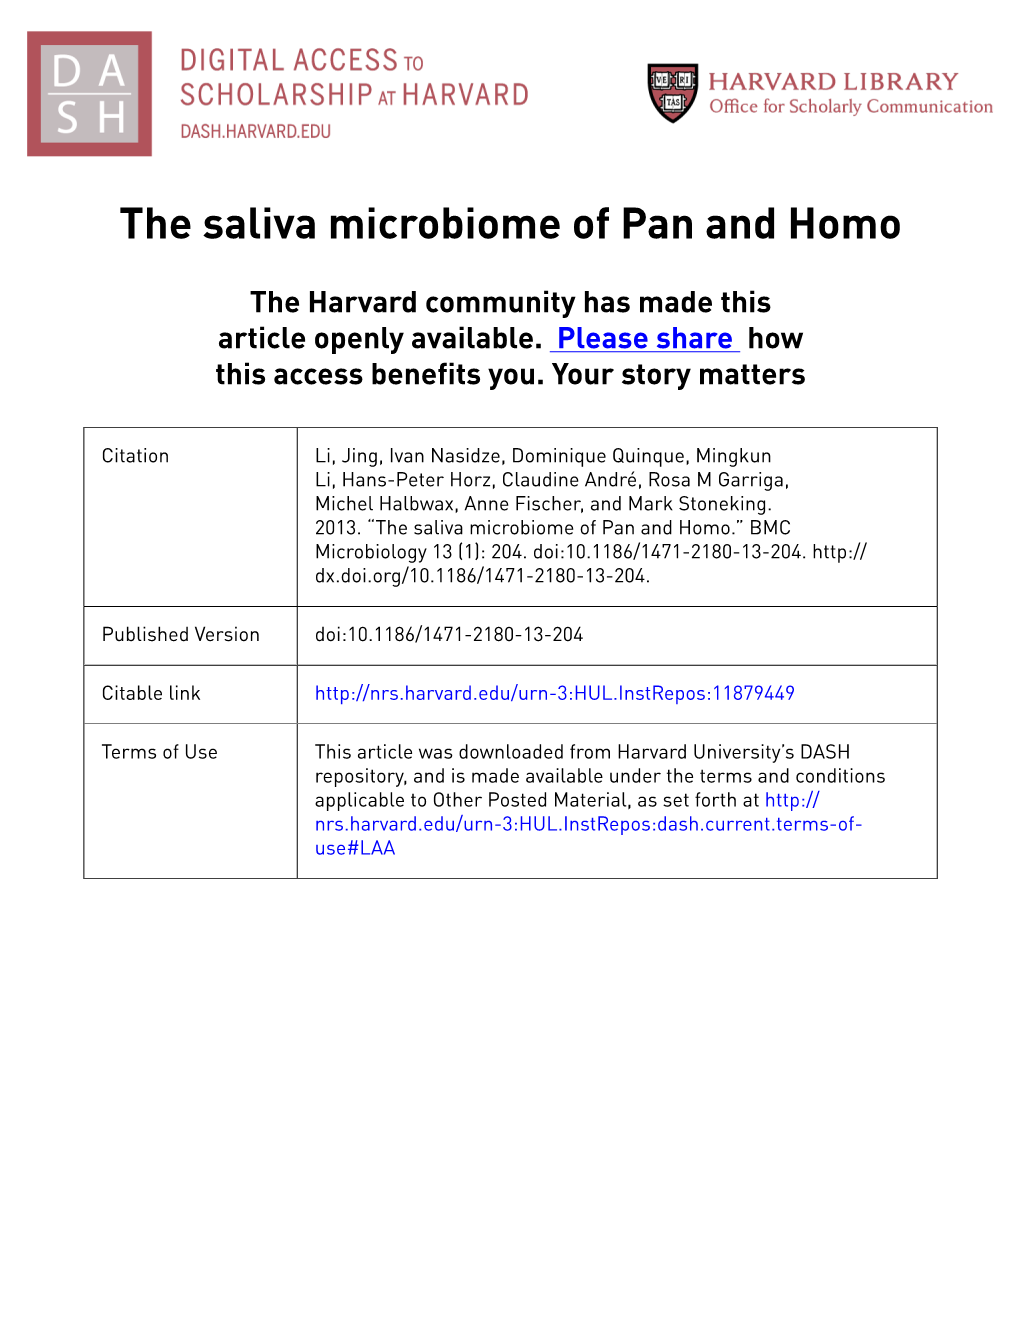 The Saliva Microbiome of Pan and Homo